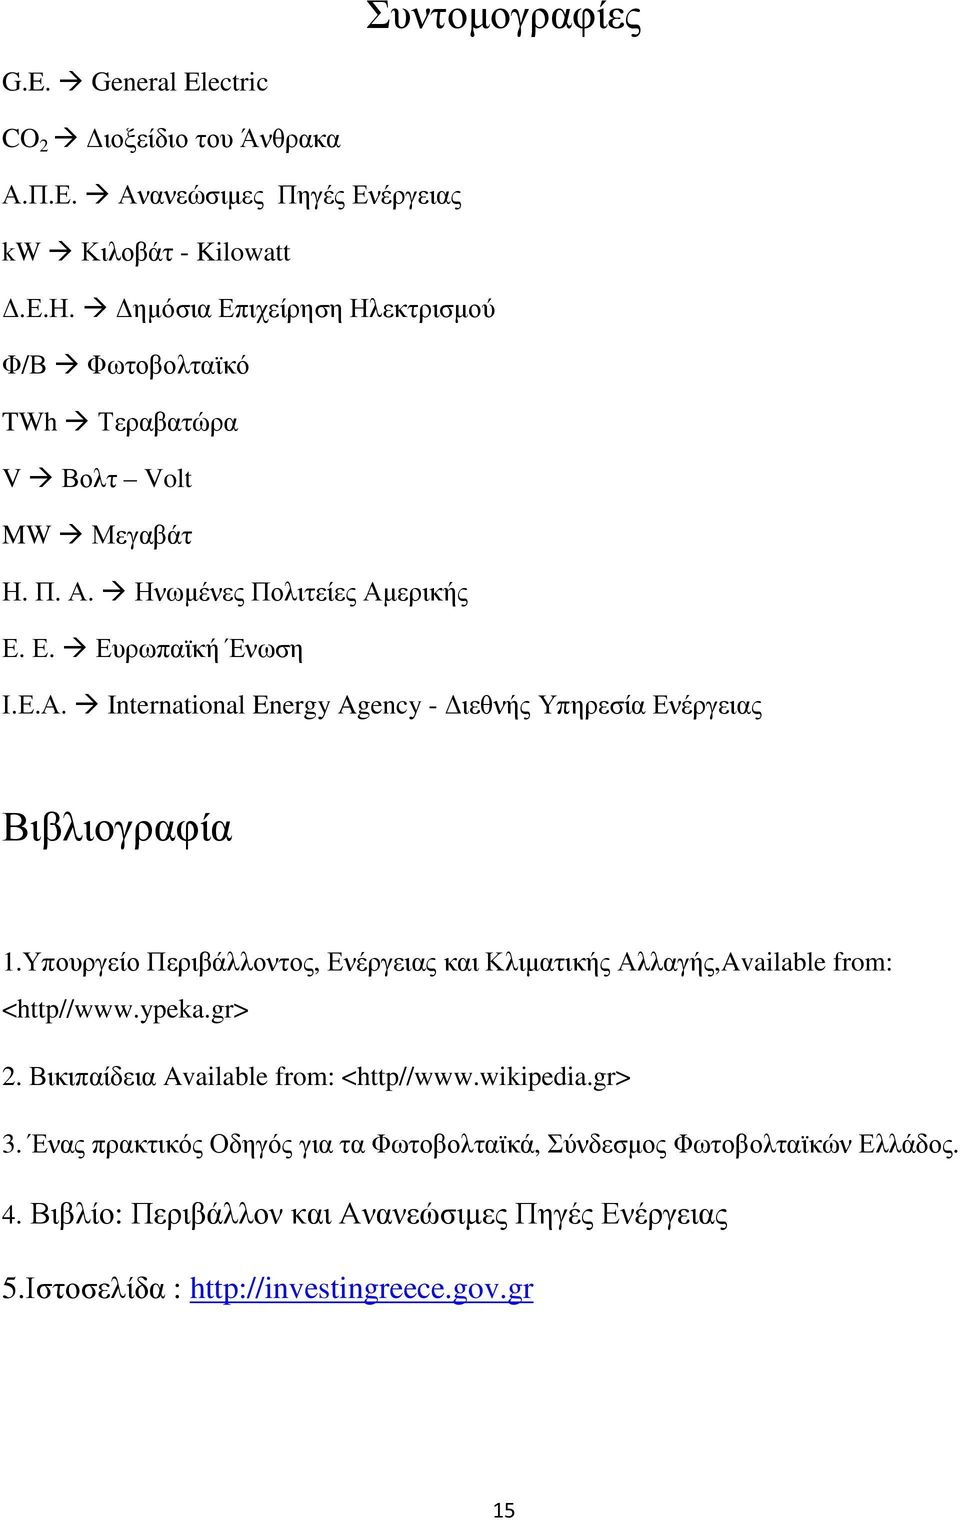 Υπουργείο Περιβάλλοντος, Ενέργειας και Κλιµατικής Αλλαγής,Available from: <http//www.ypeka.gr> 2. Βικιπαίδεια Available from: <http//www.wikipedia.gr> 3.